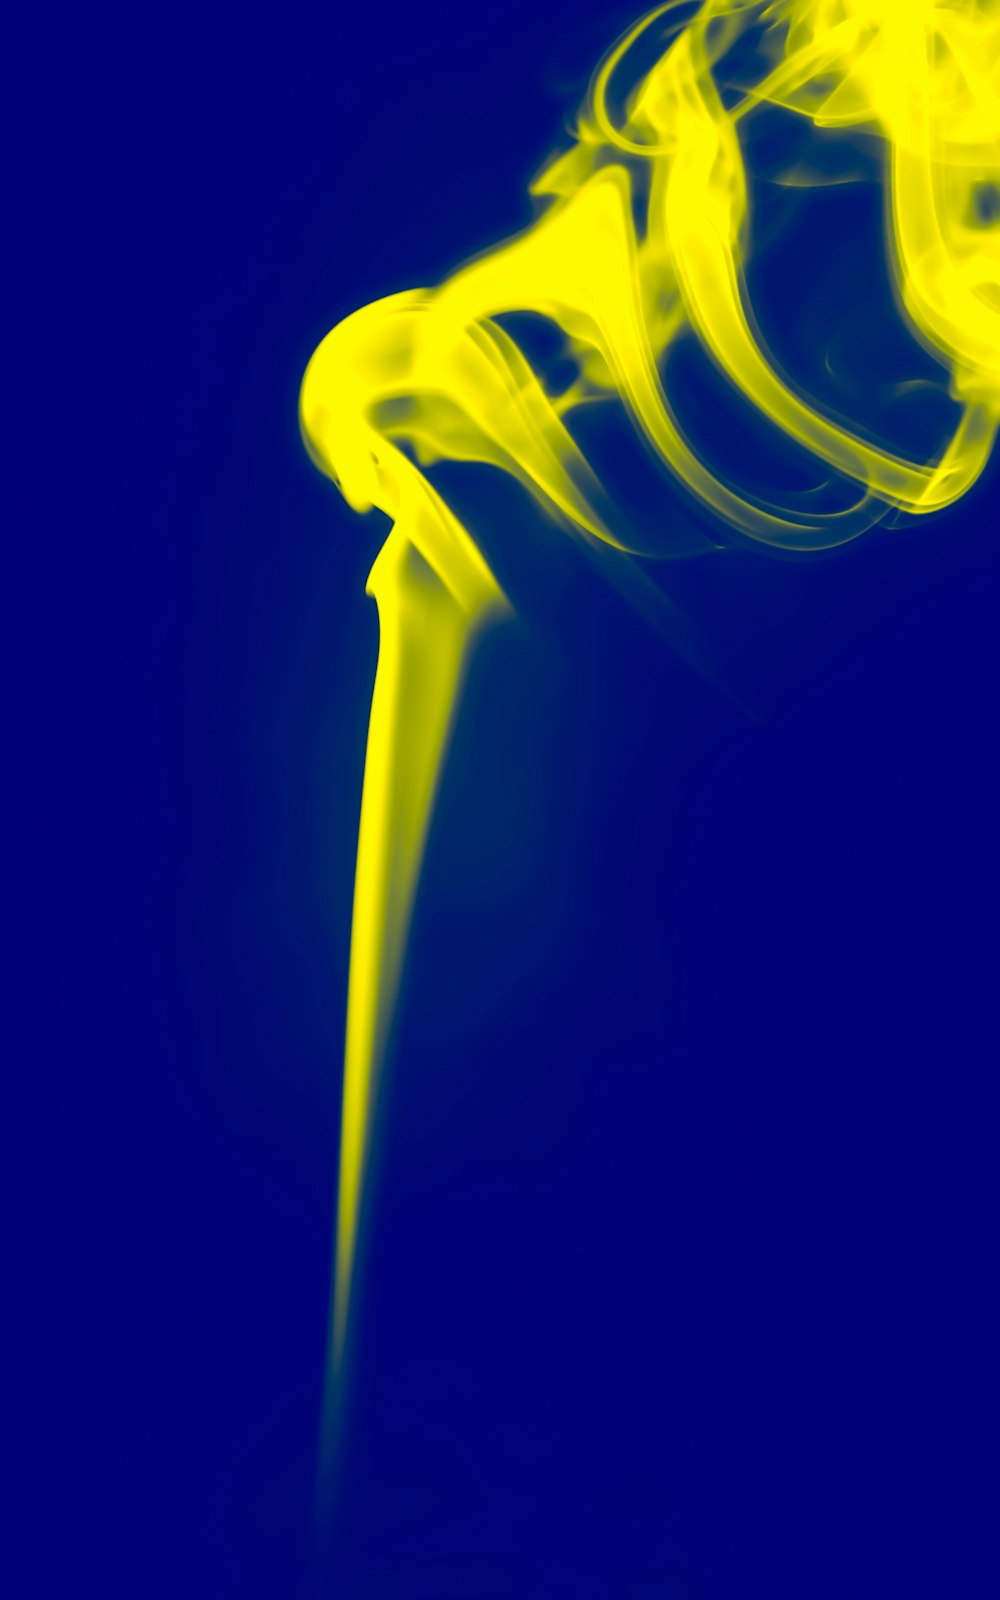 uma foto azul e amarela de um objeto amarelo